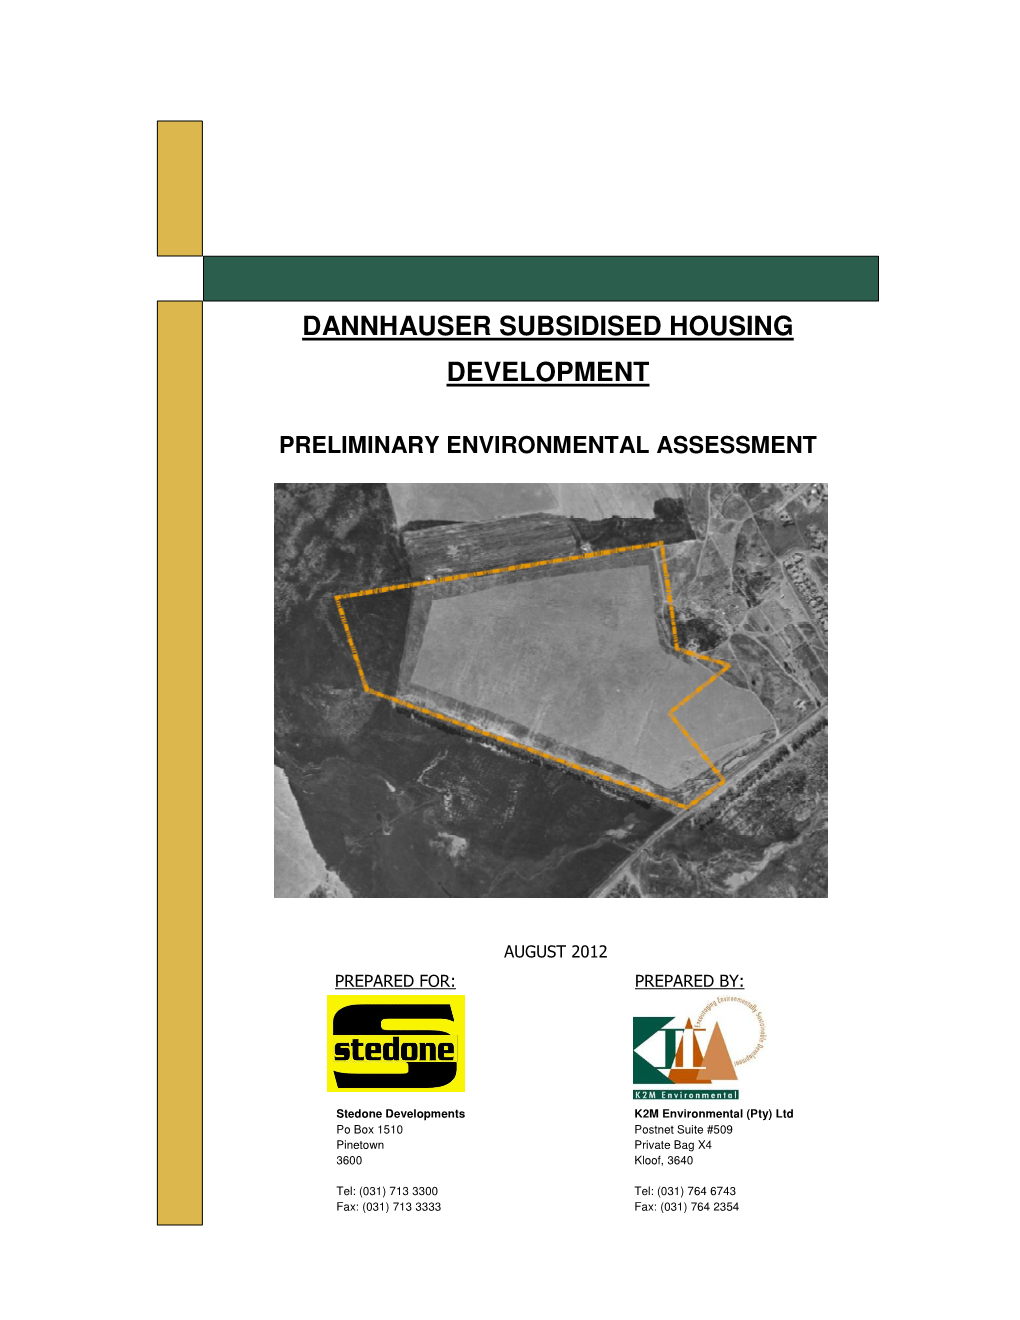 Dannhauser Subsidised Housing Development